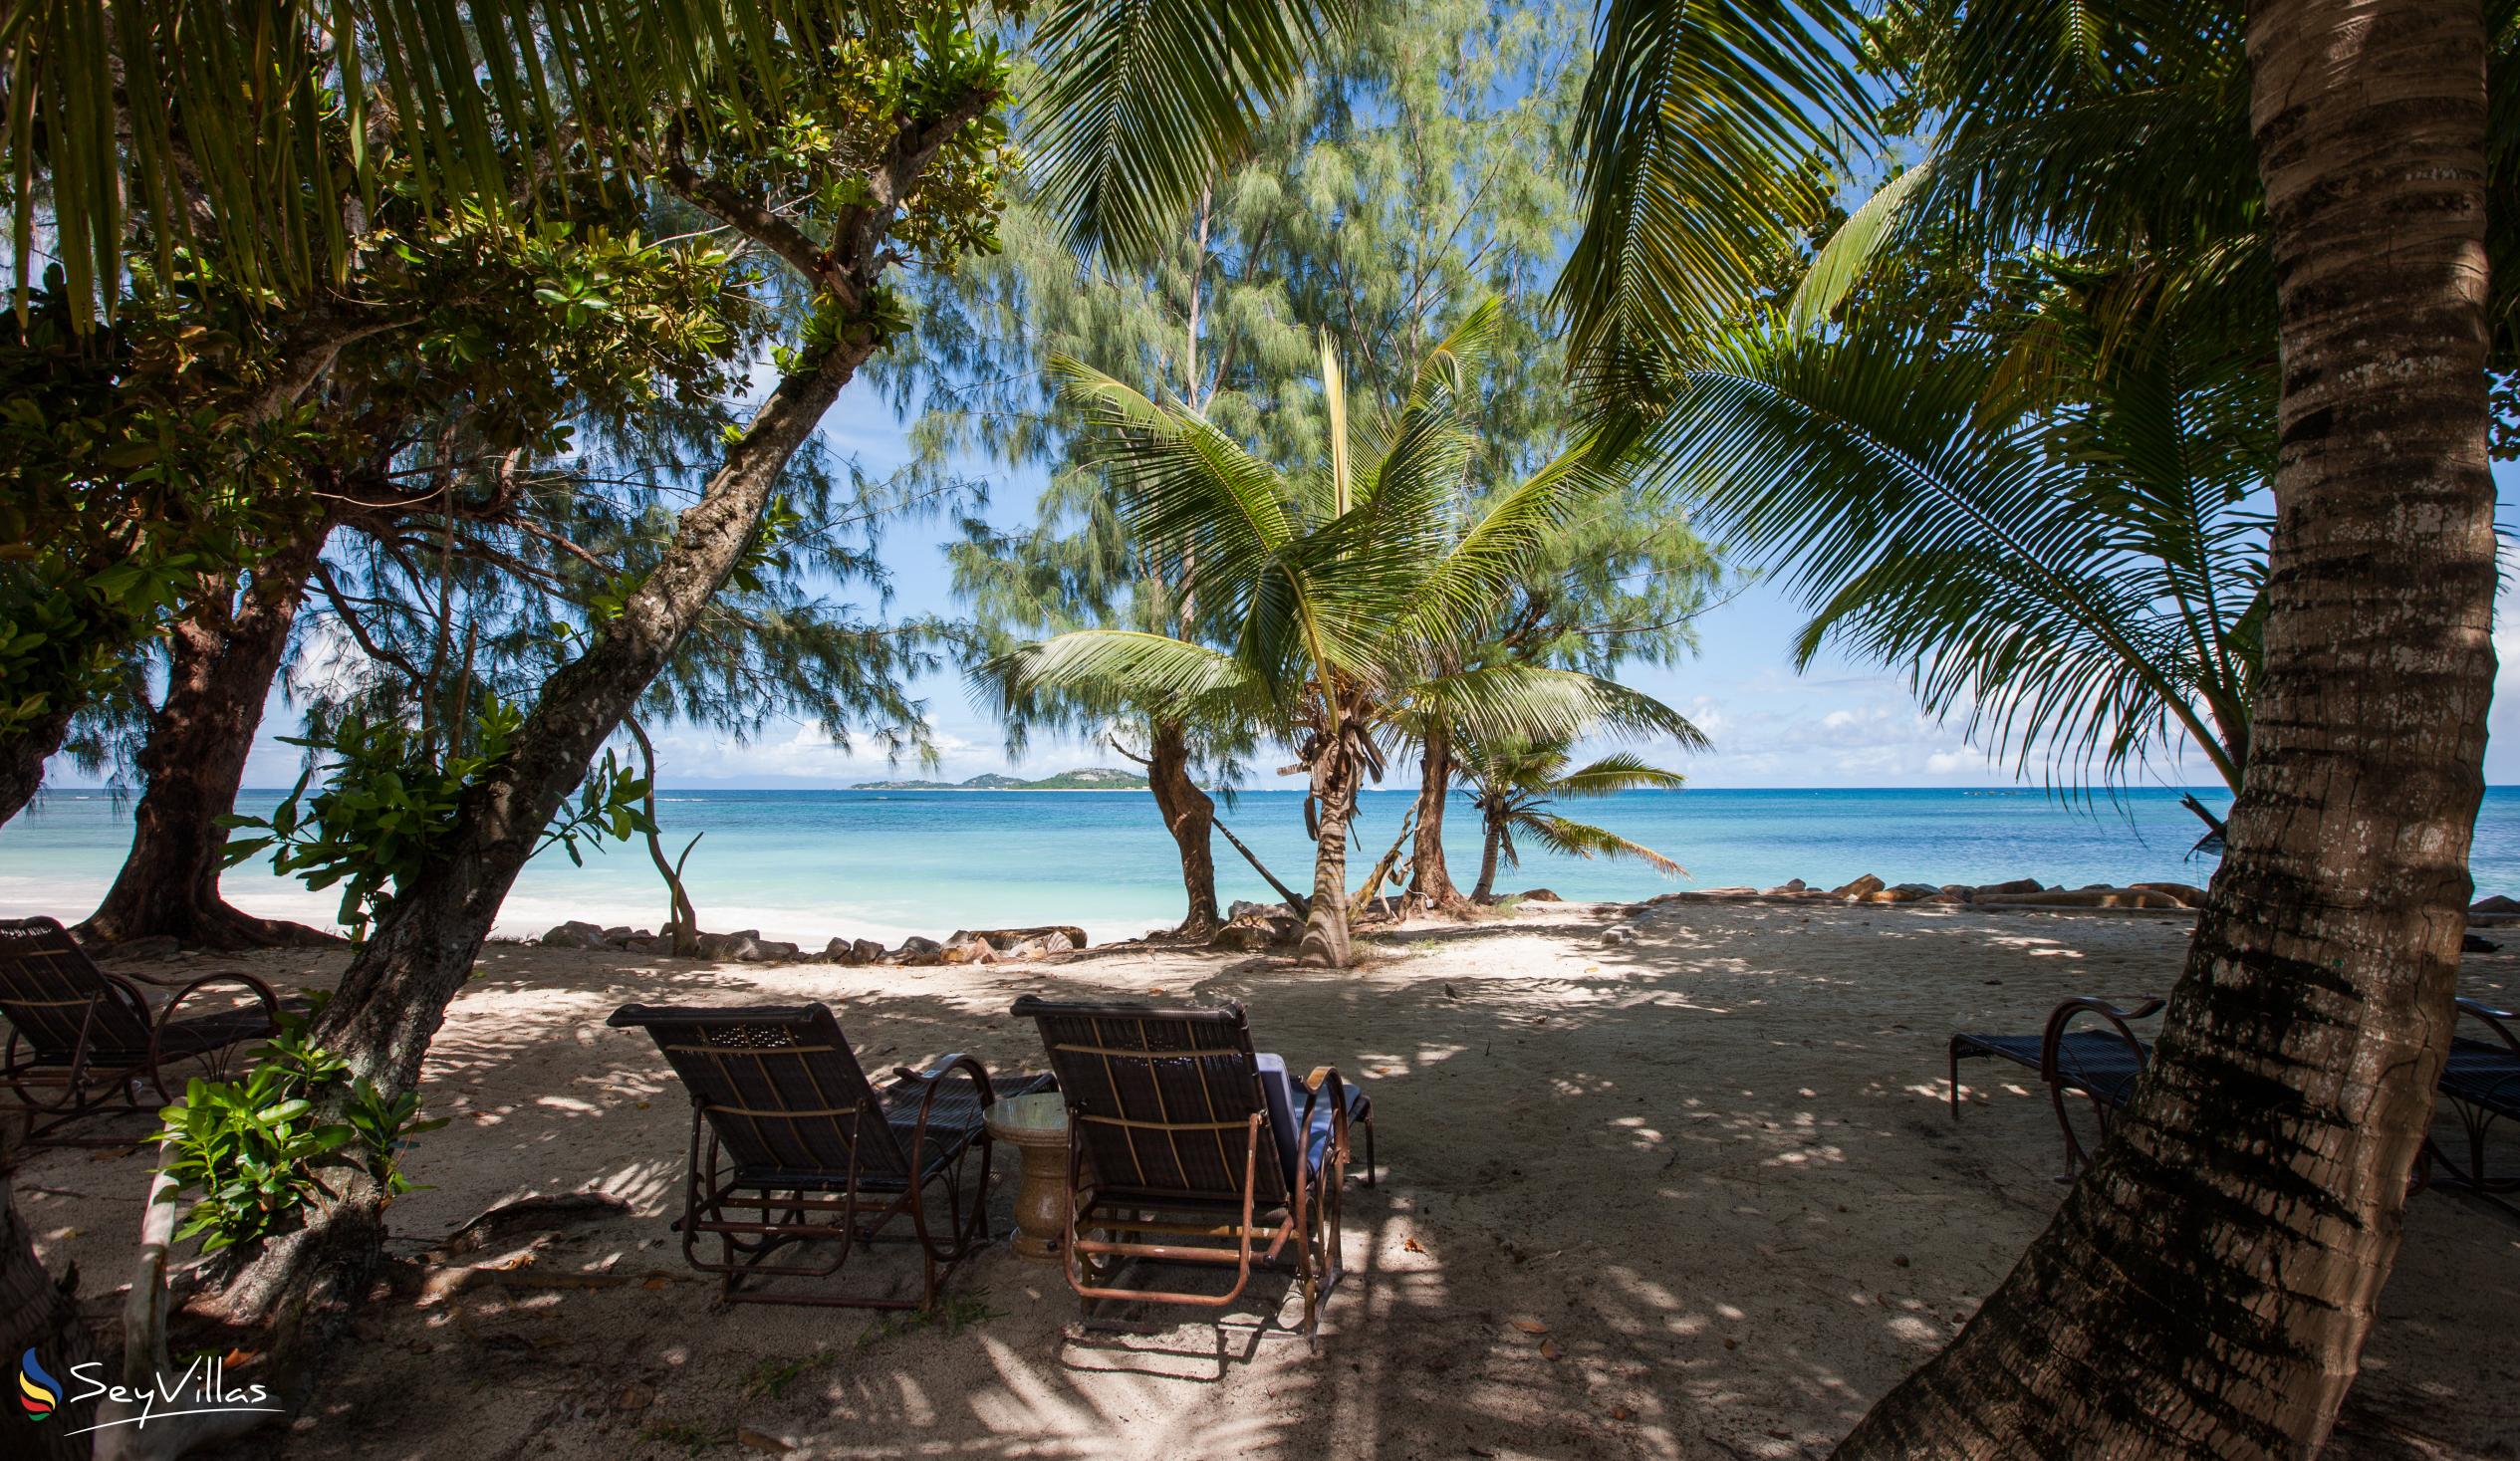 Foto 13: Castello Beach Villa - Aussenbereich - Praslin (Seychellen)